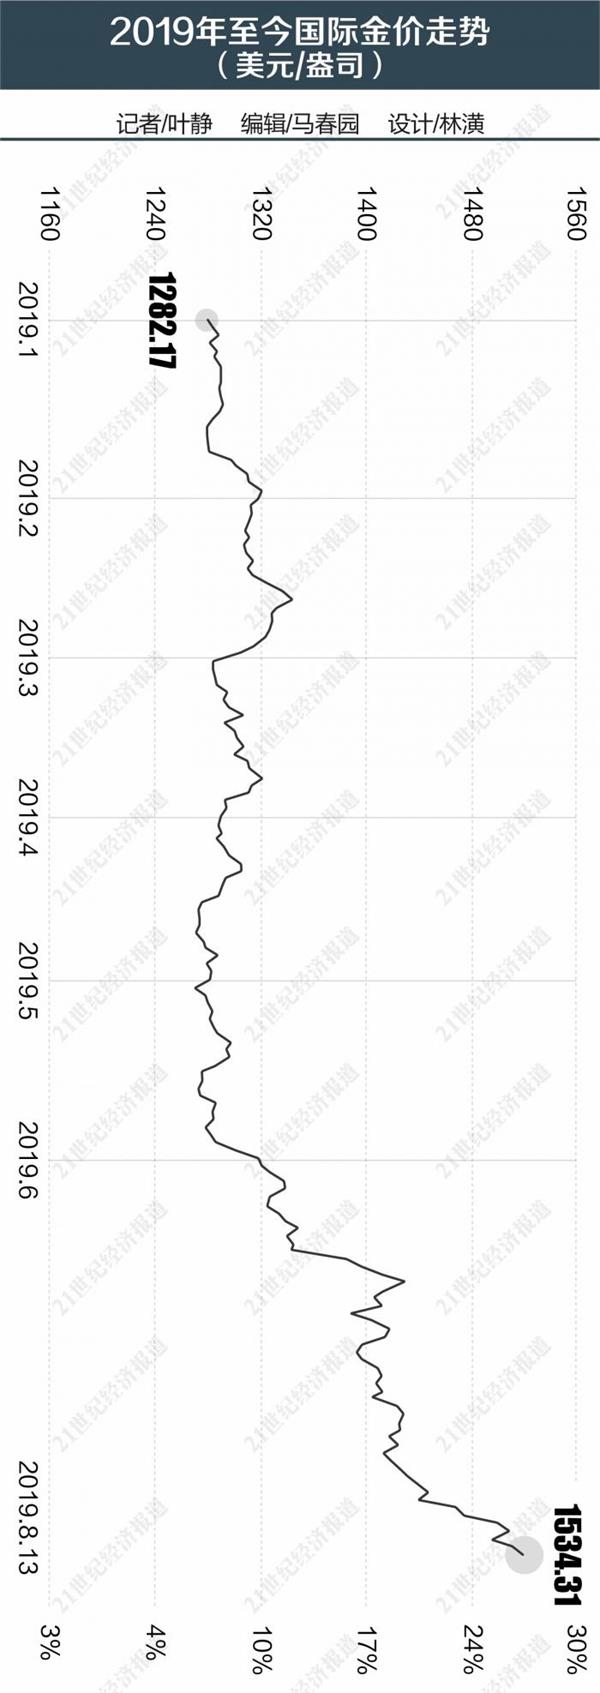 黑天鹅“乱舞”金价扶摇直上 黄金现货年内涨幅逼近20%